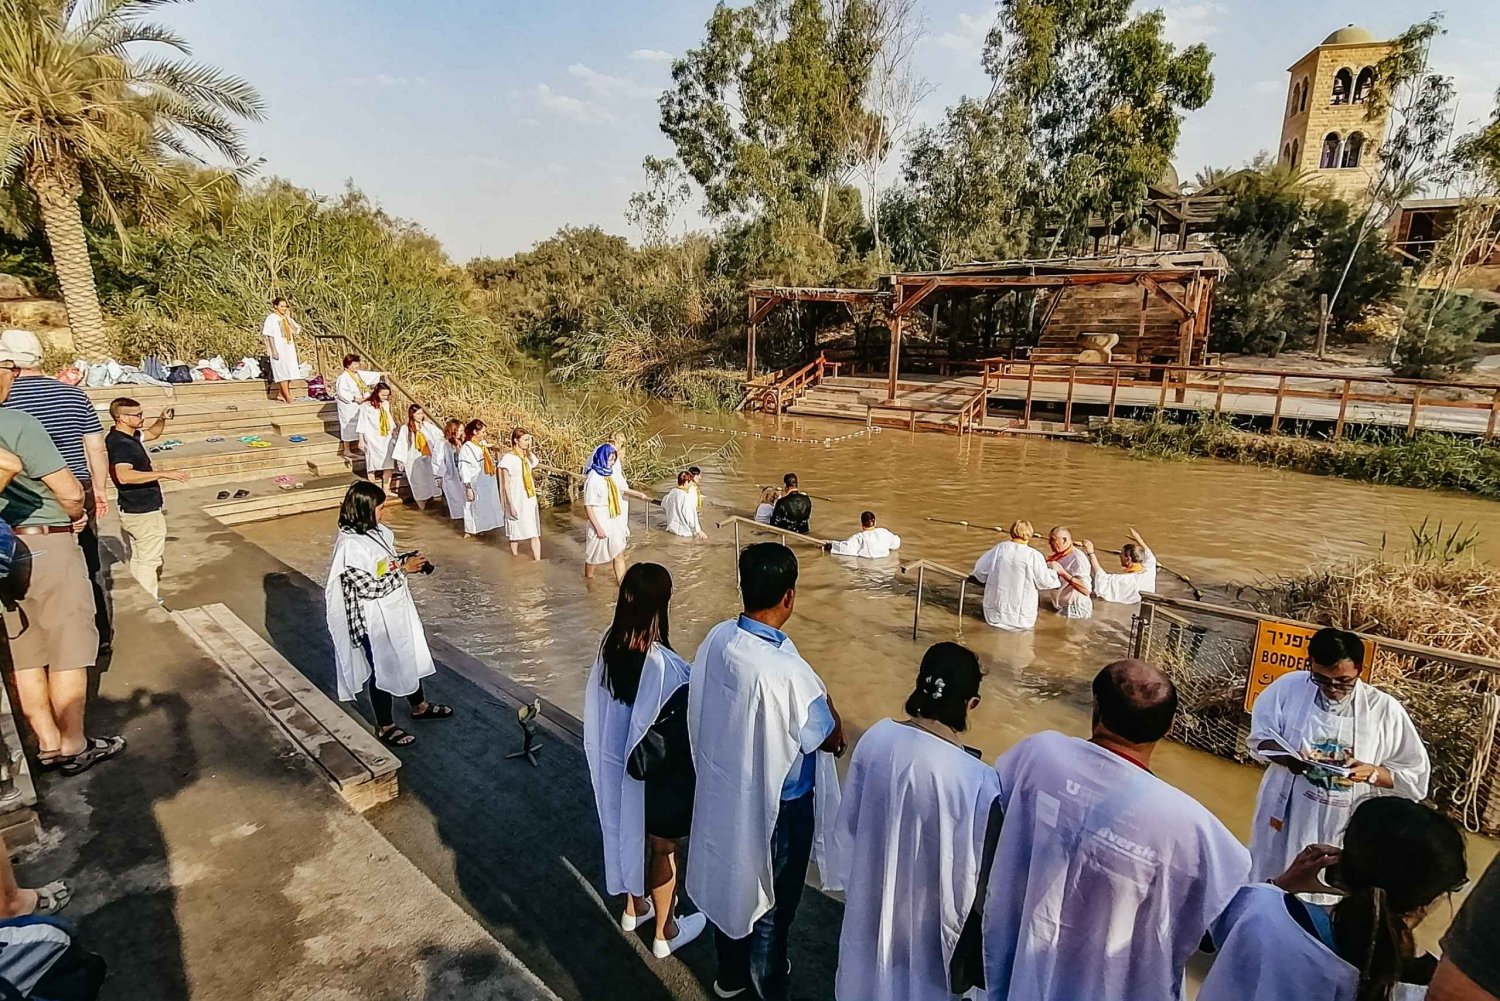 Jerozolima/Tel Awiw: Betlejem, Jerycho i wycieczka nad rzekę Jordan